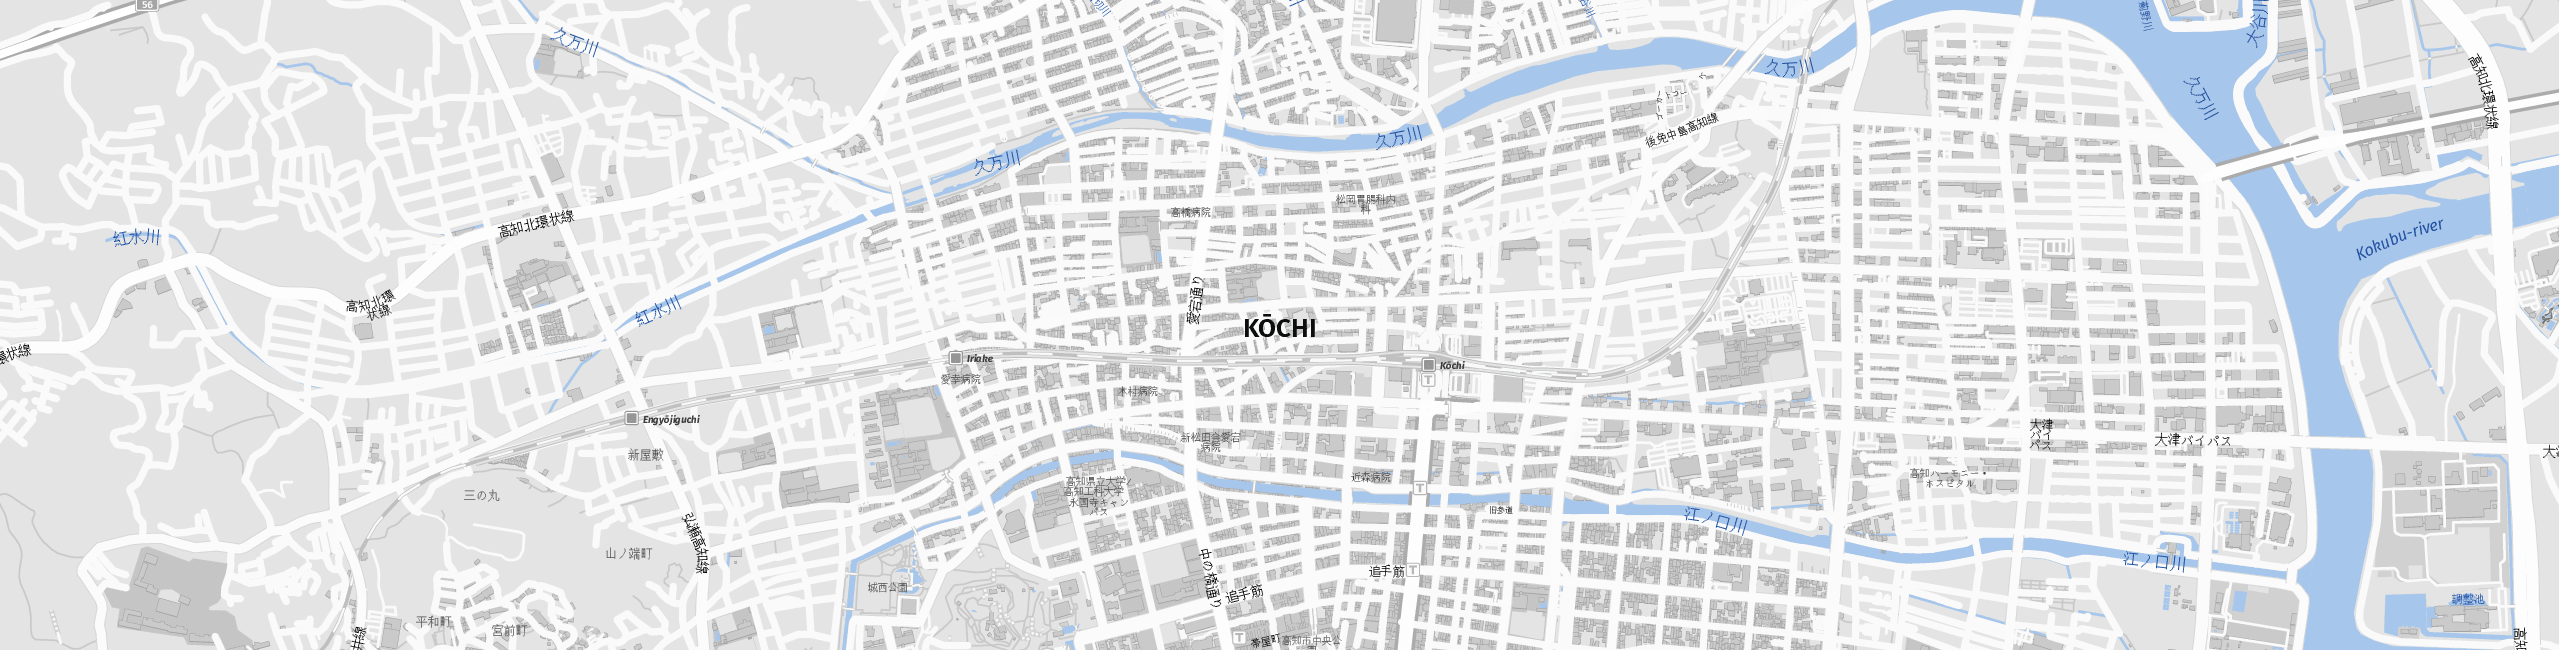 Stadtplan Kochi zum Downloaden.